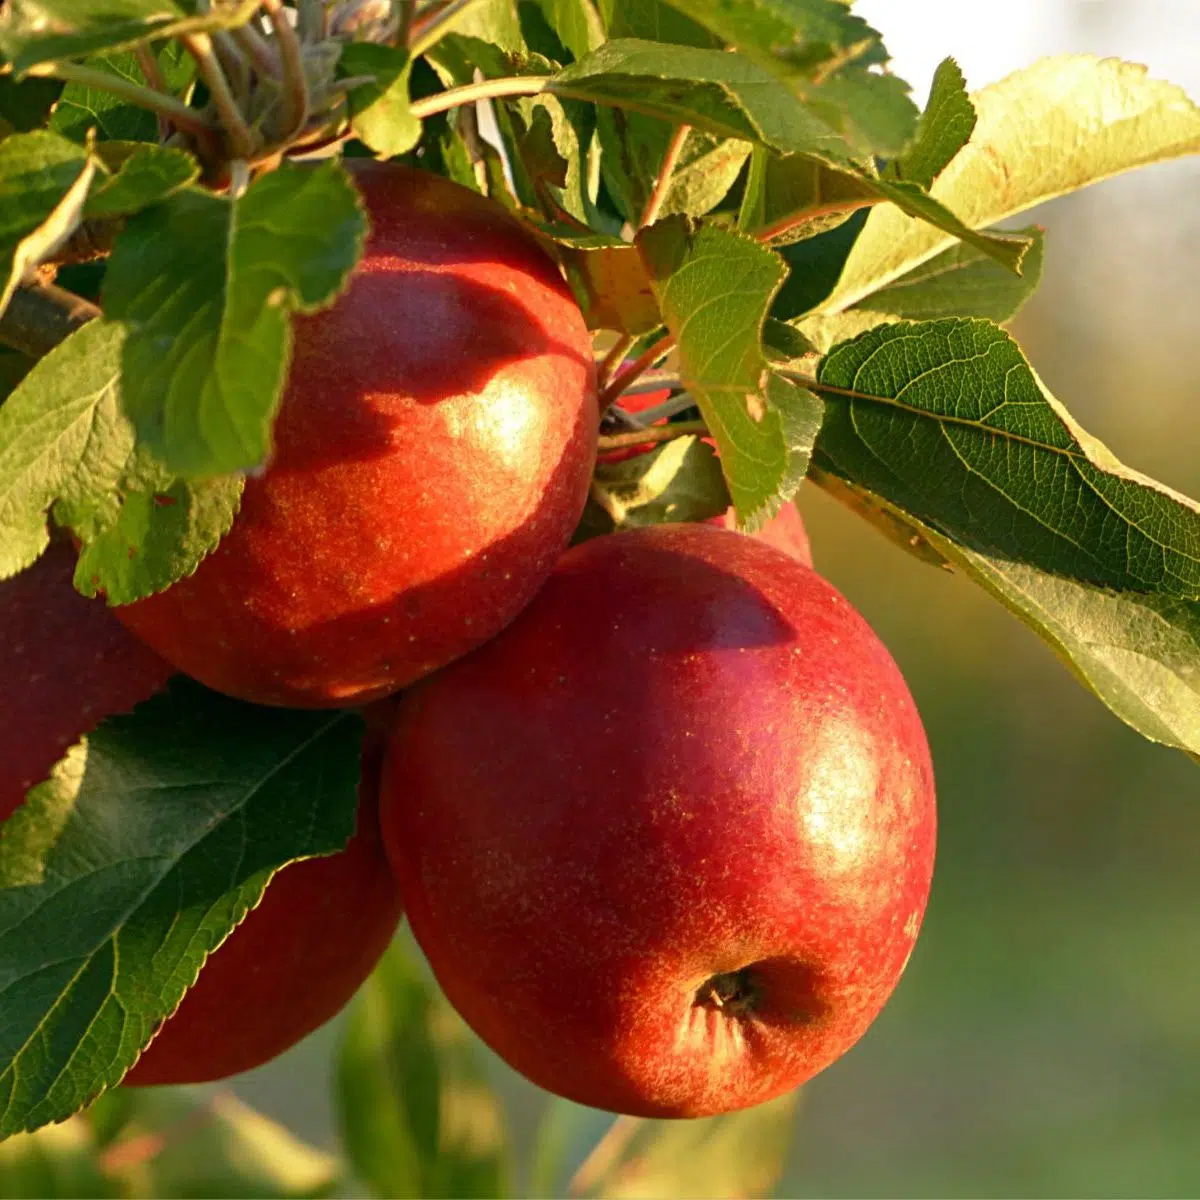 सेब पाई के लिए सबसे अच्छा सेब धूप में पेड़ पर ताजा सेब के साथ पकाना।